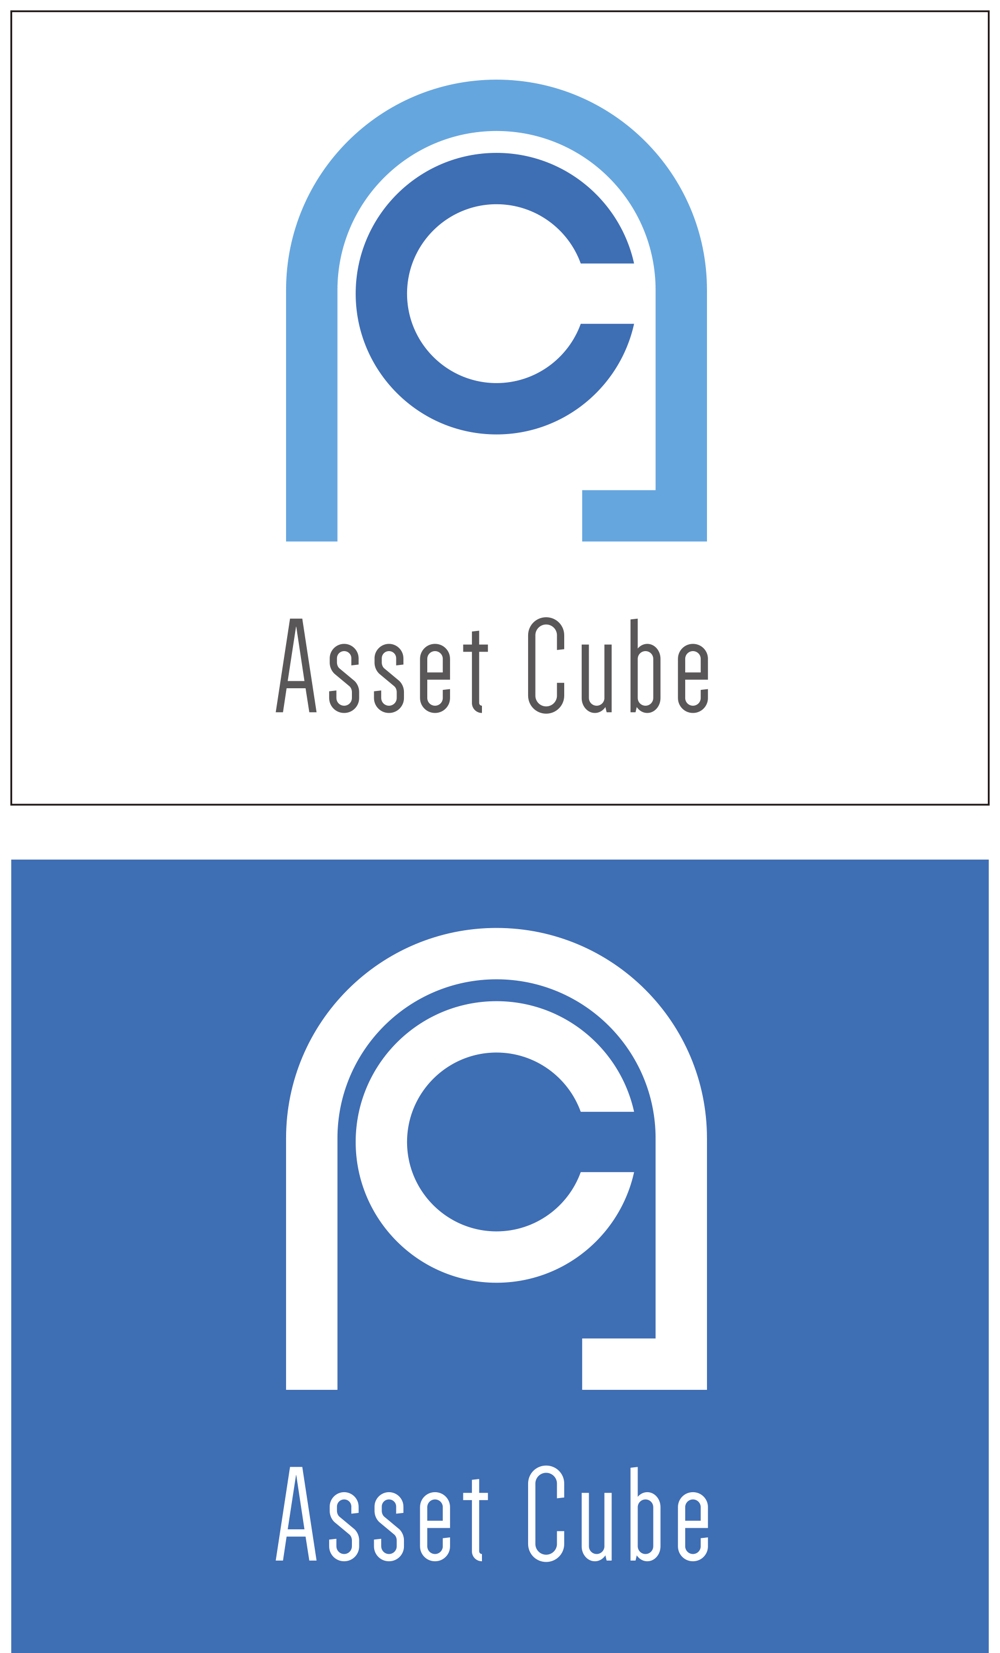 Asset Cube-001.jpg